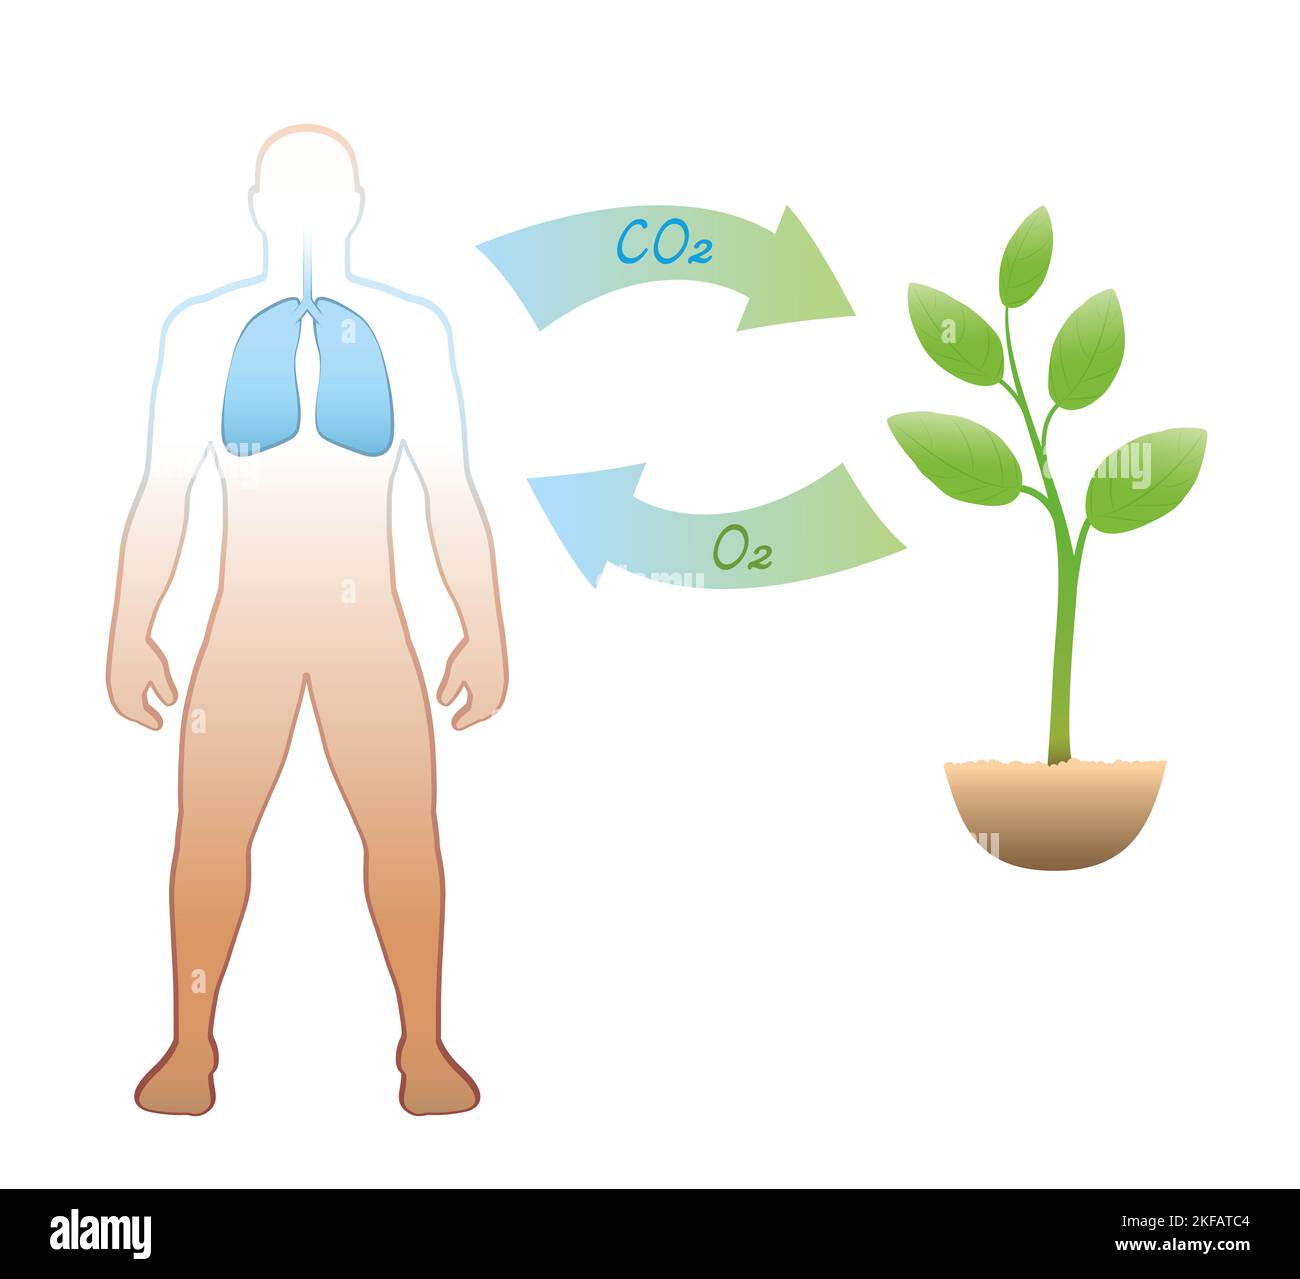 Cycle du carbone entre les humains et les plantes - expiration et prise de CO2 dioxyde de carbone - inhalation et libération de O2 oxygène. Banque D'Images